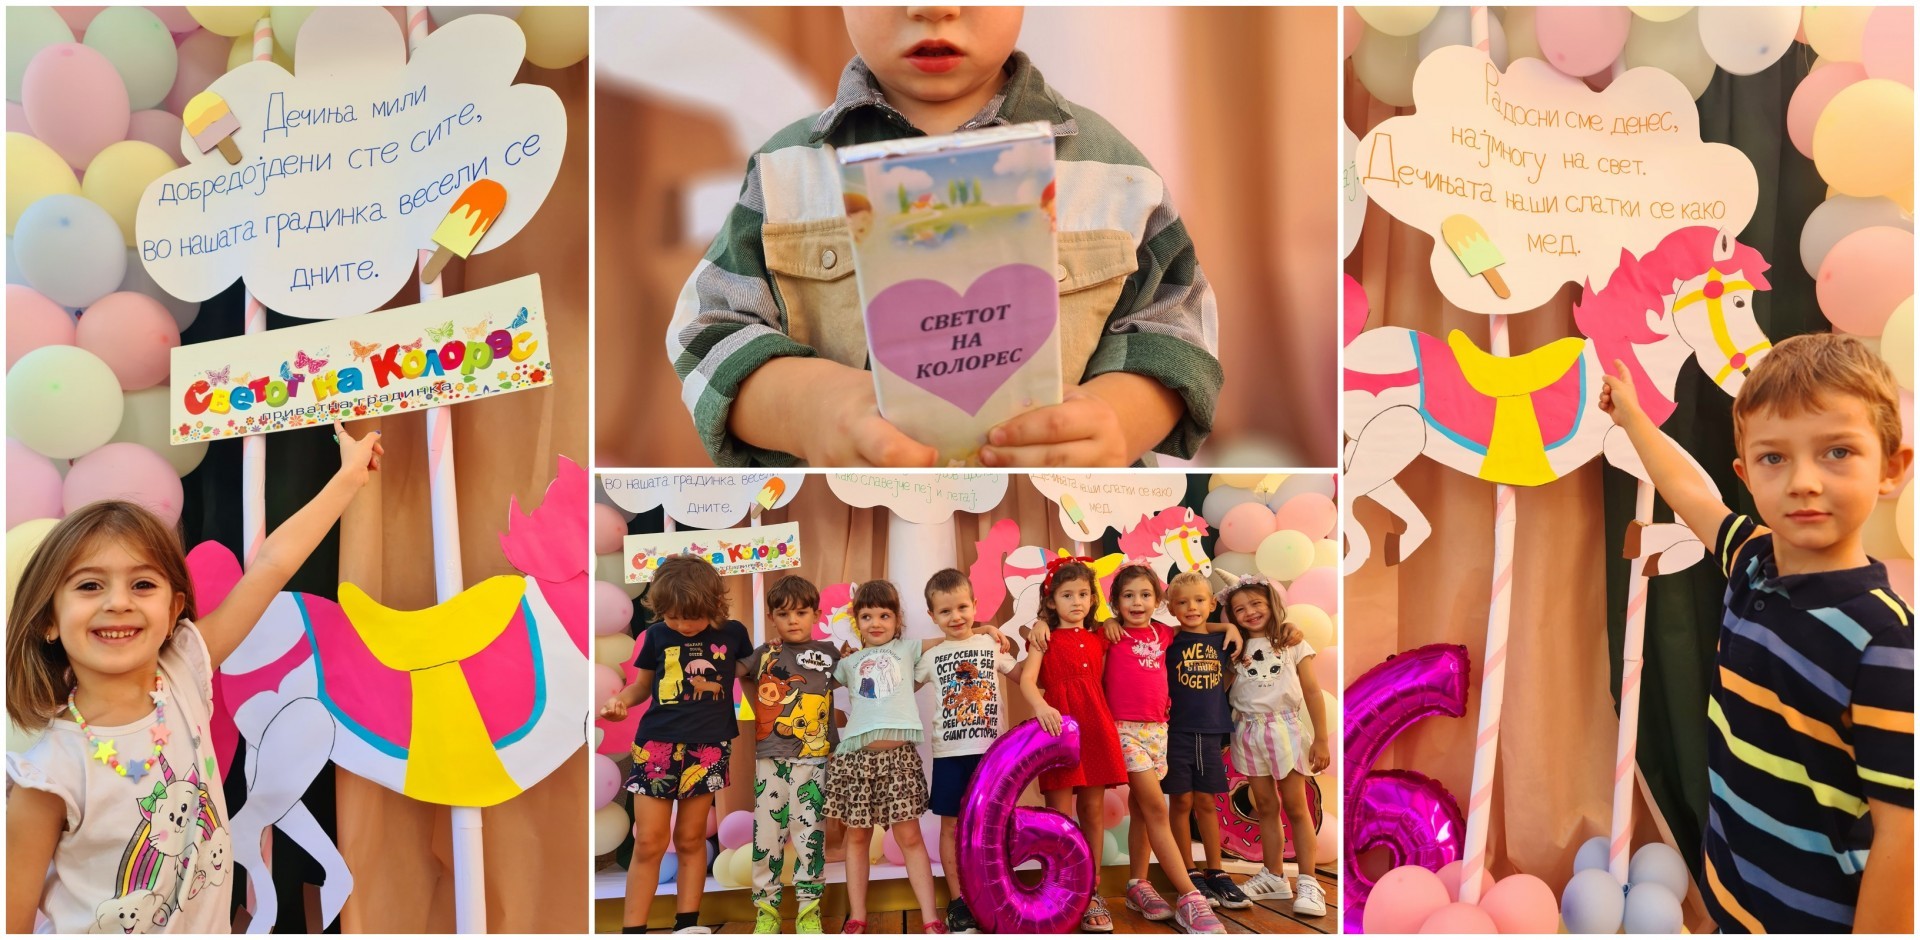 Роденденска забава од бајките: 6 години успешна приказна „Светот на Колорес“, 3 градинки и многу среќни дечиња (ГАЛЕРИЈА)